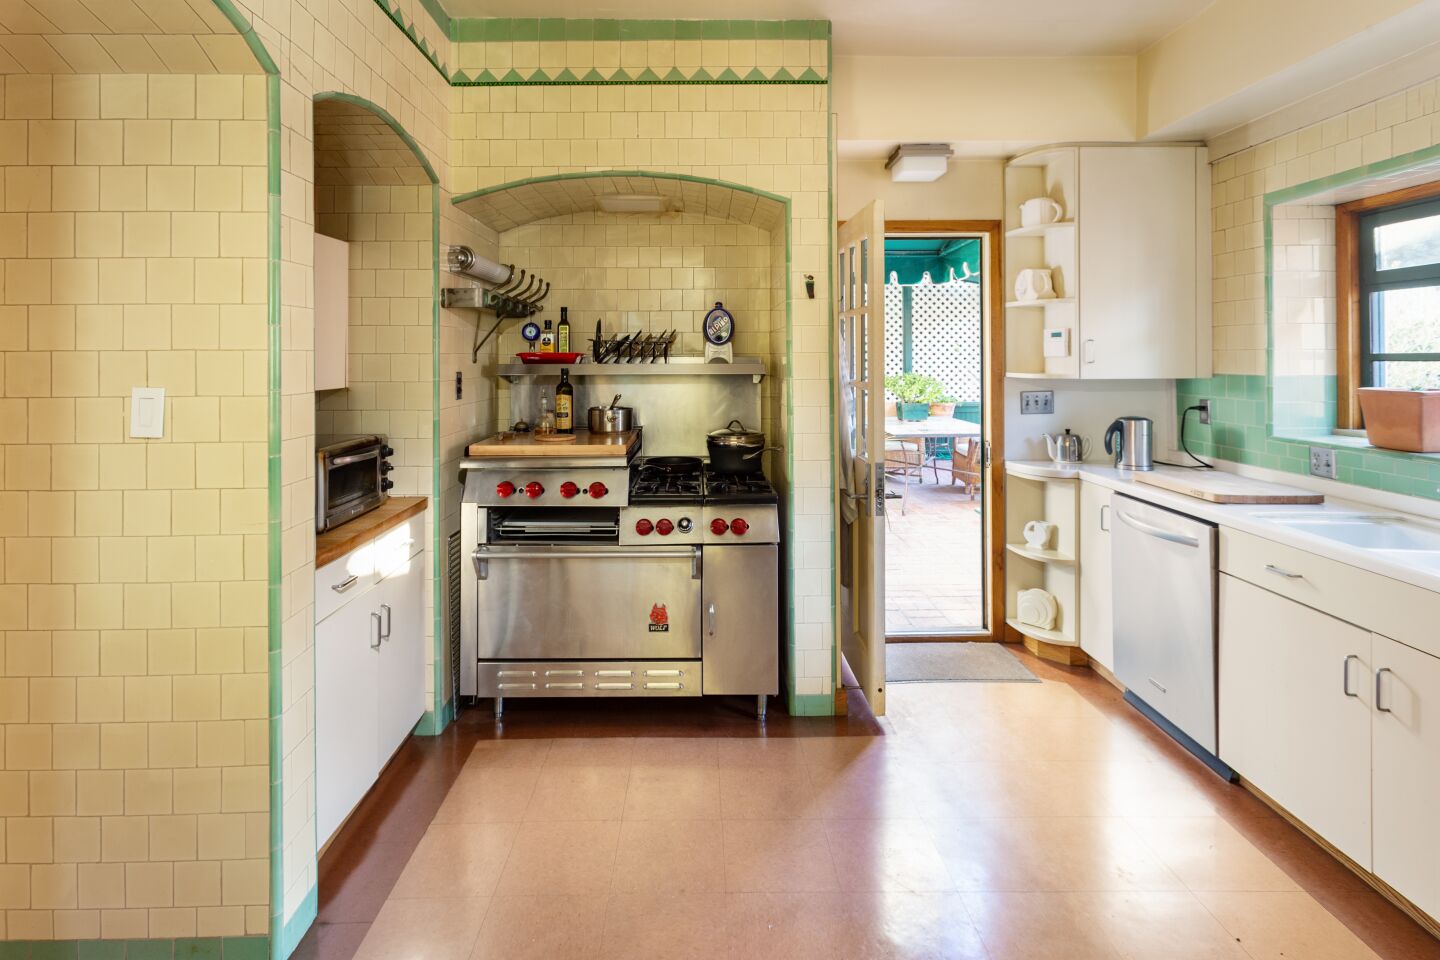 The kitchen retains its vintage tilework.